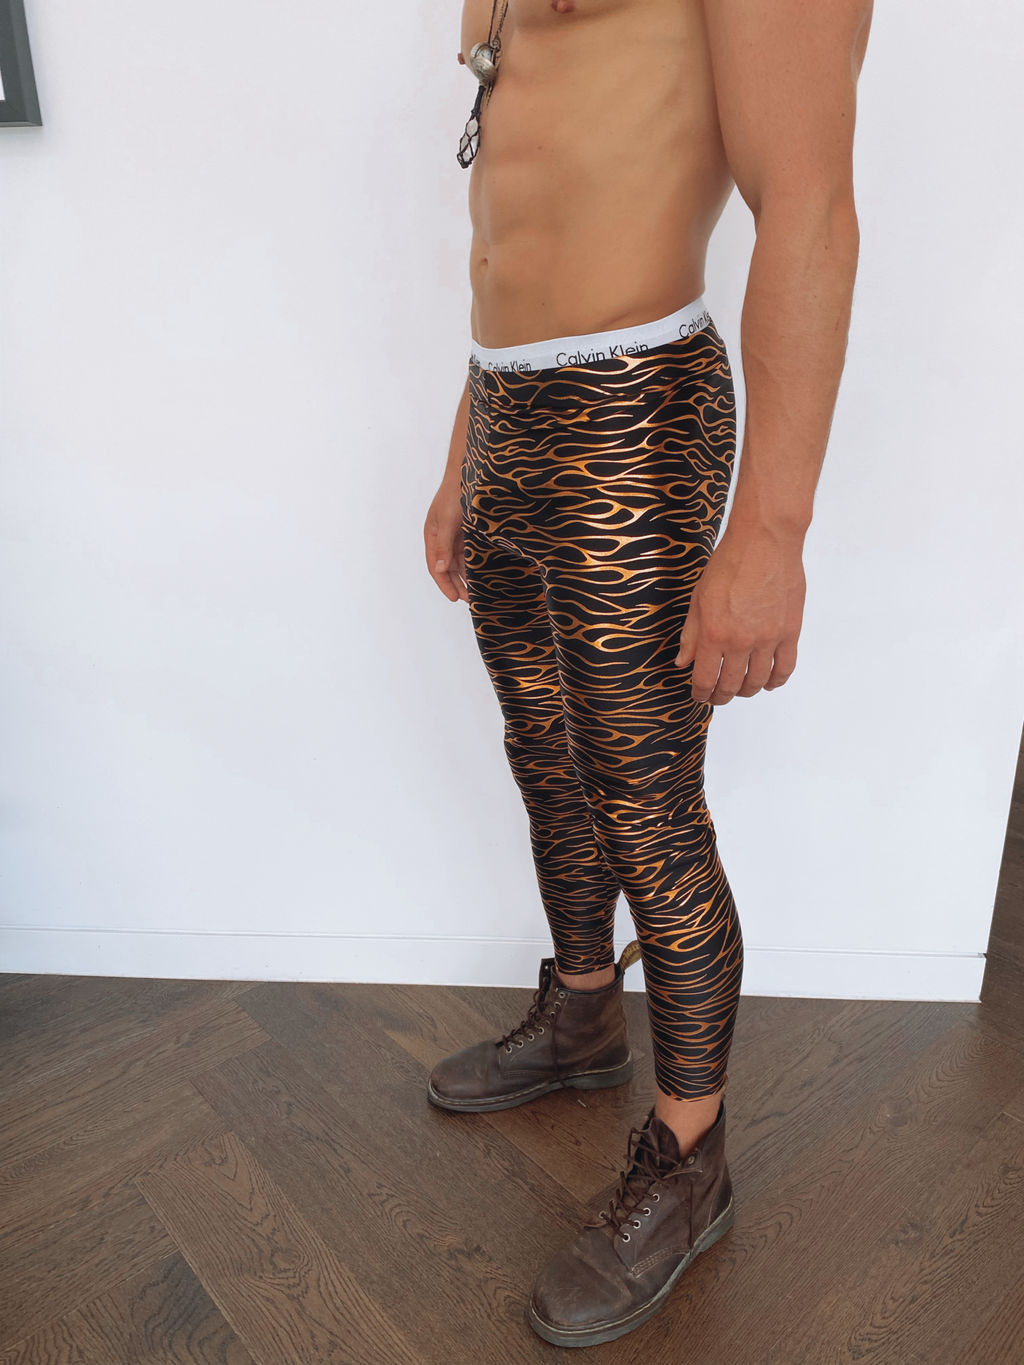 calvin klein leopard print leggings,cheap - OFF 55% 